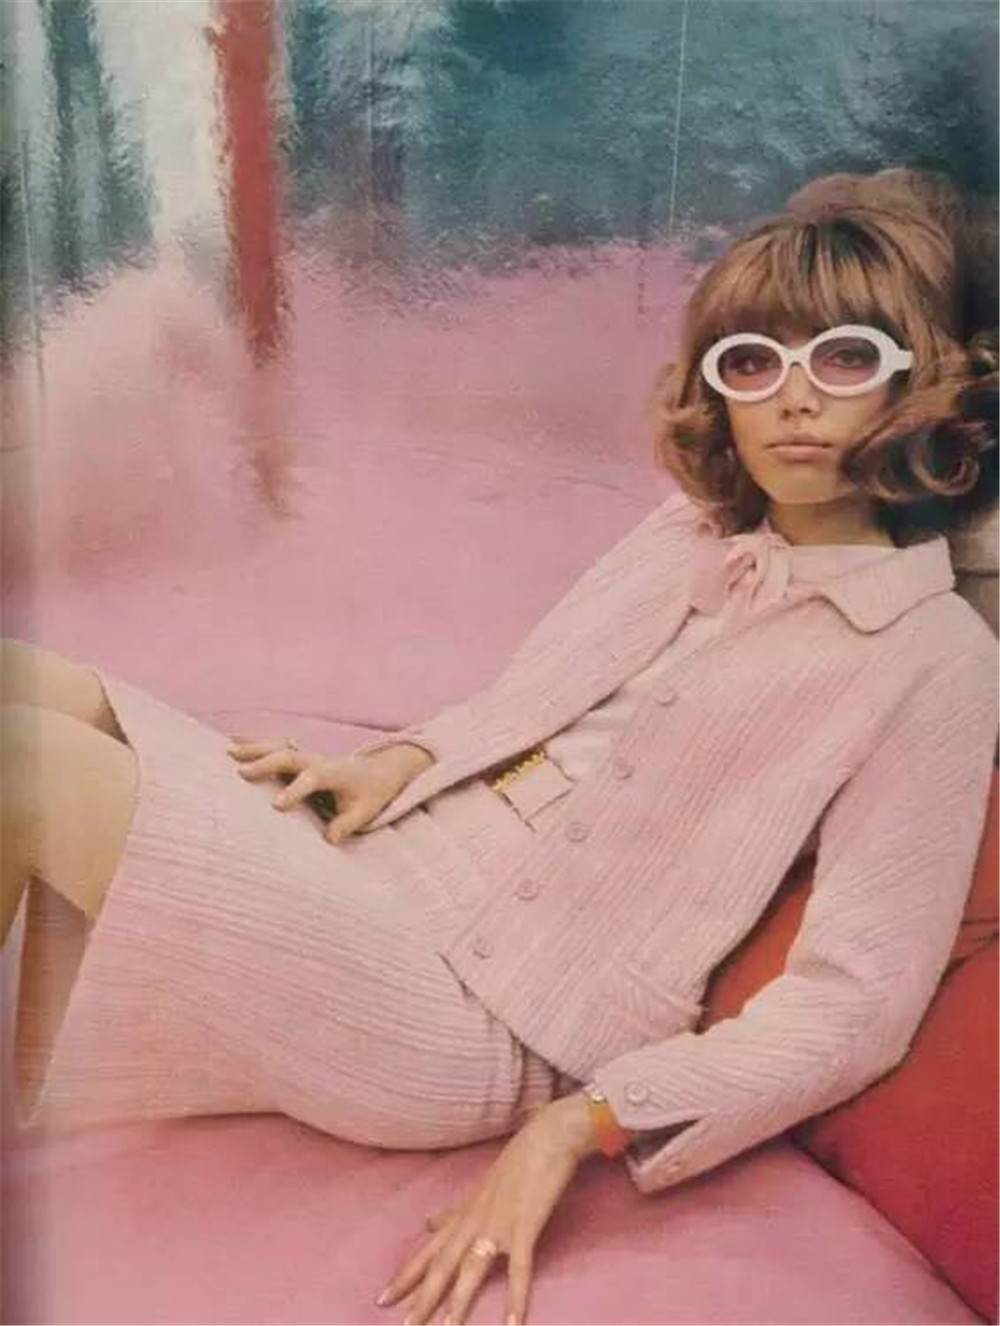 穿搭灵感 少女心的粉色近年在时装界大行其道,杰奎琳风格的粉色套装